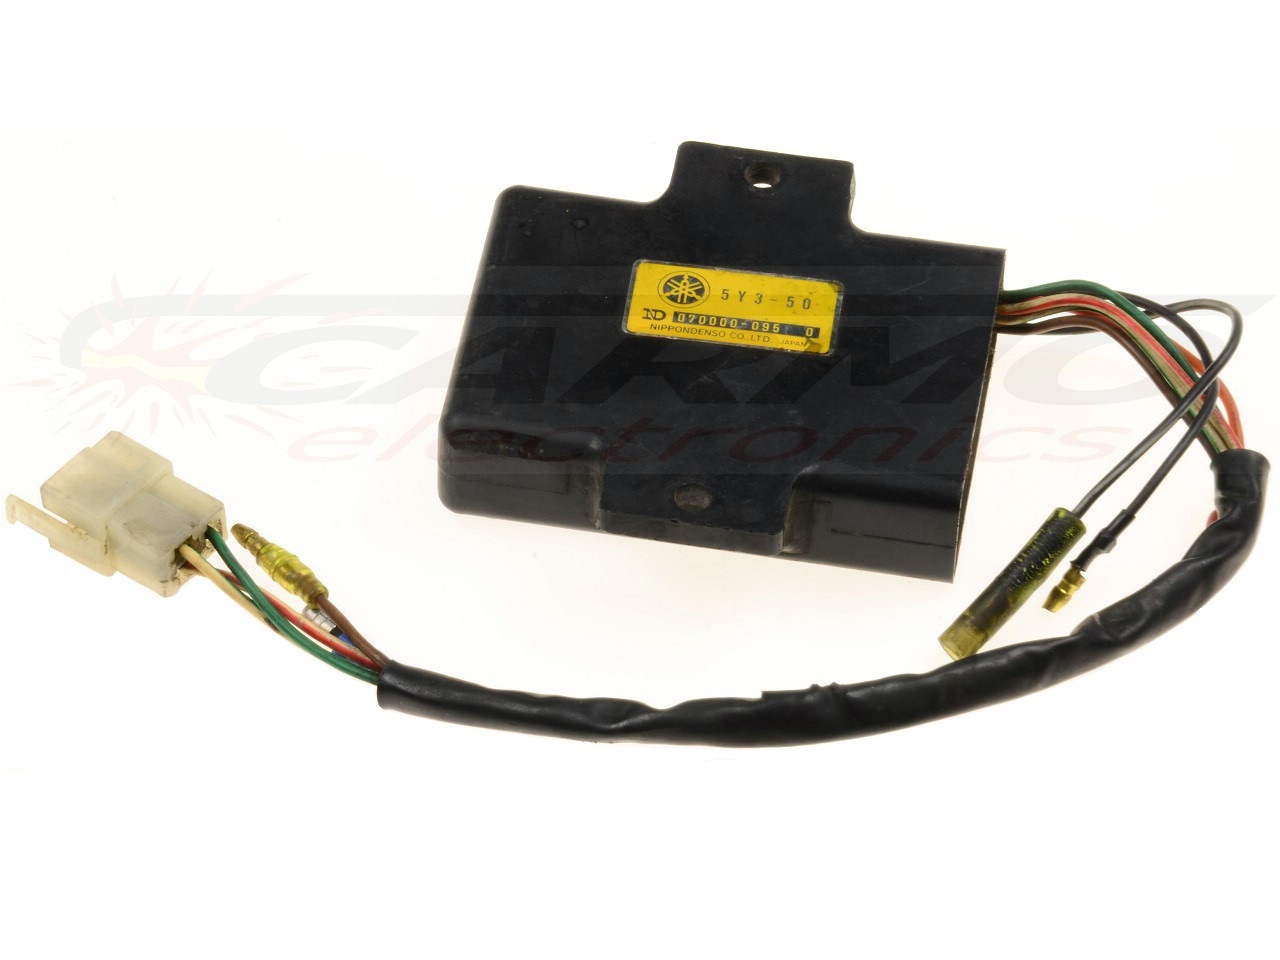 TT600 CDI dispositif de commande boîte noire (5Y3-50, 2WK-50)